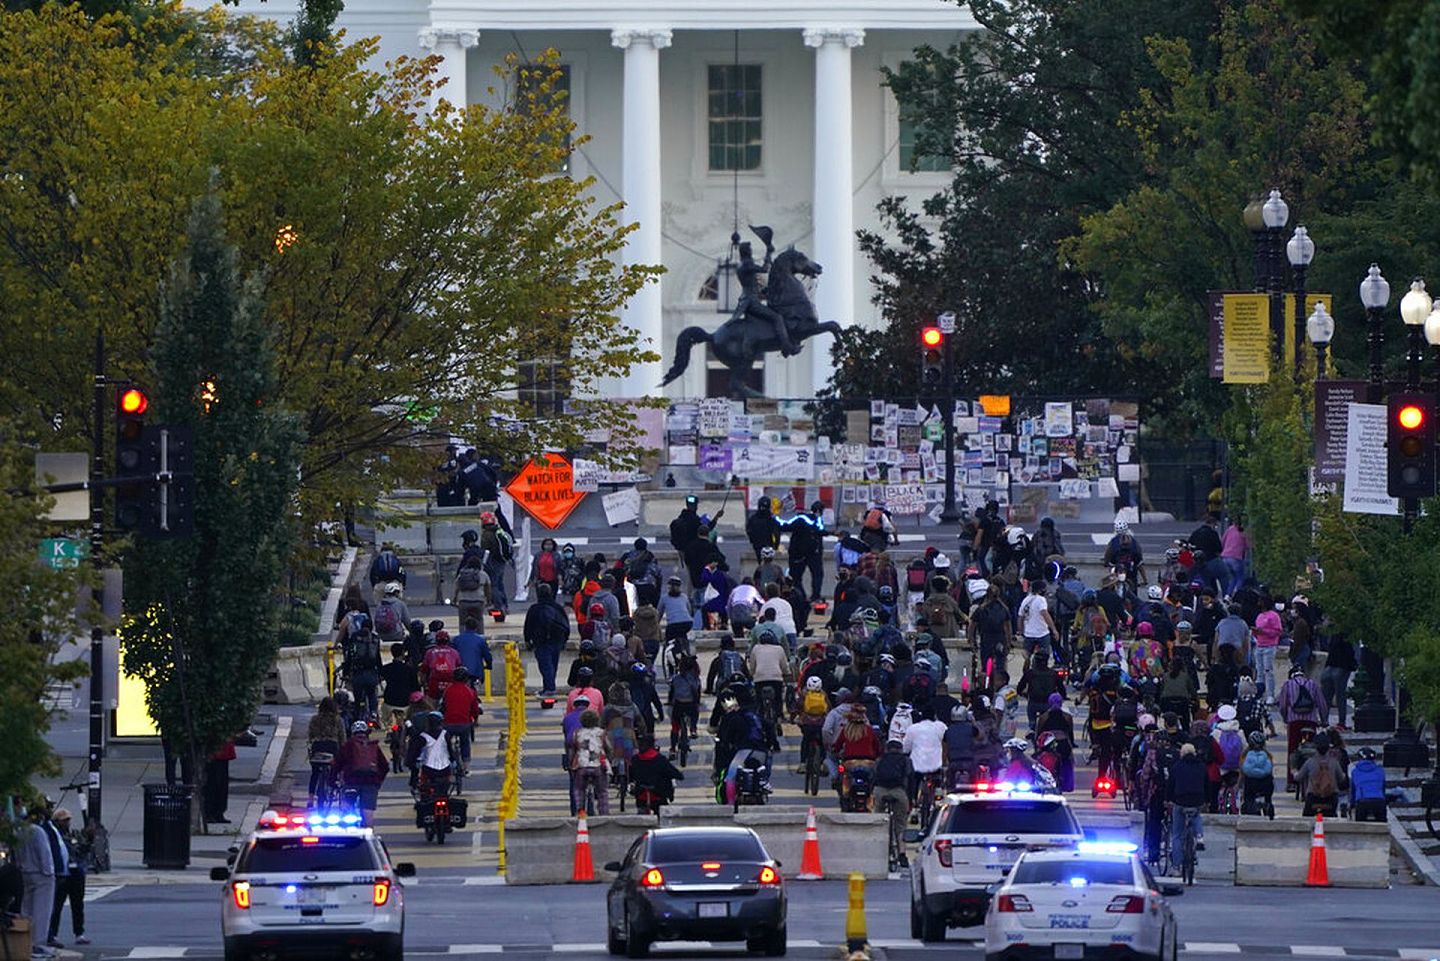 白宫外仍有“黑人的命也是命”（Black Lives Matter）示威者聚集。（美联社）